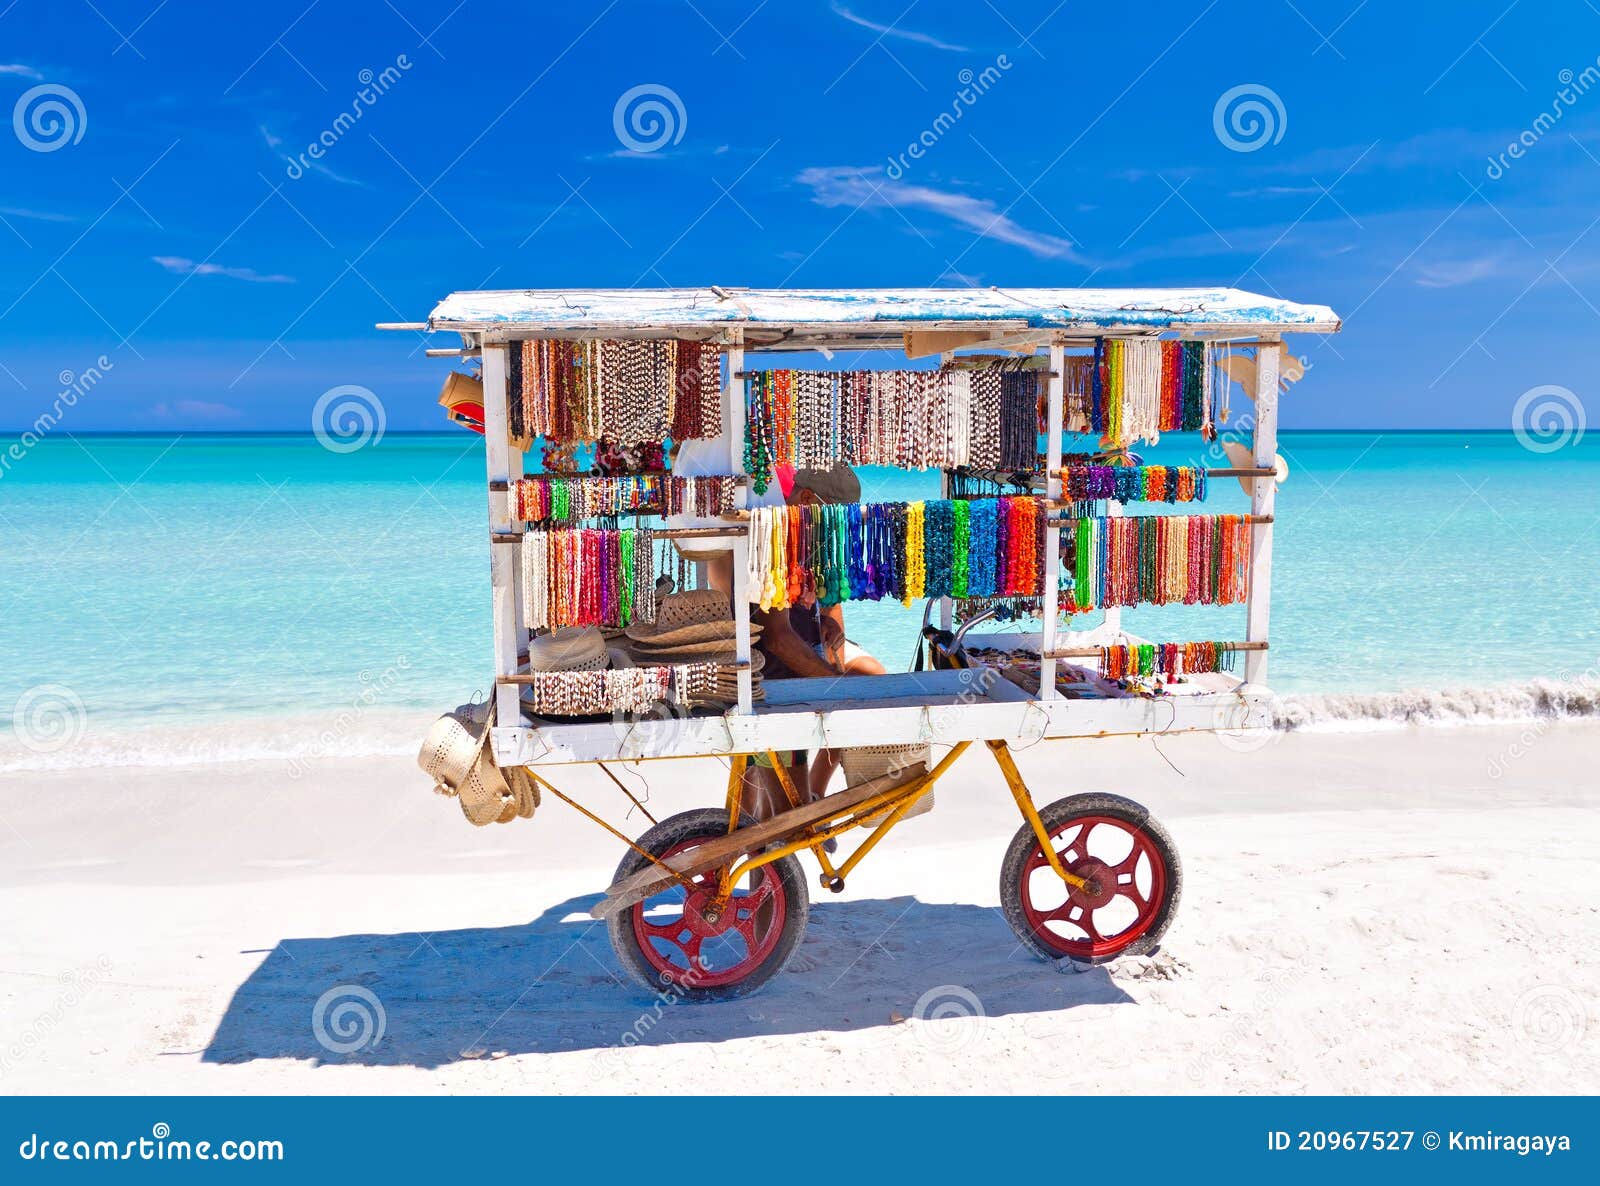 souvenirs cart at varadero beach in cuba